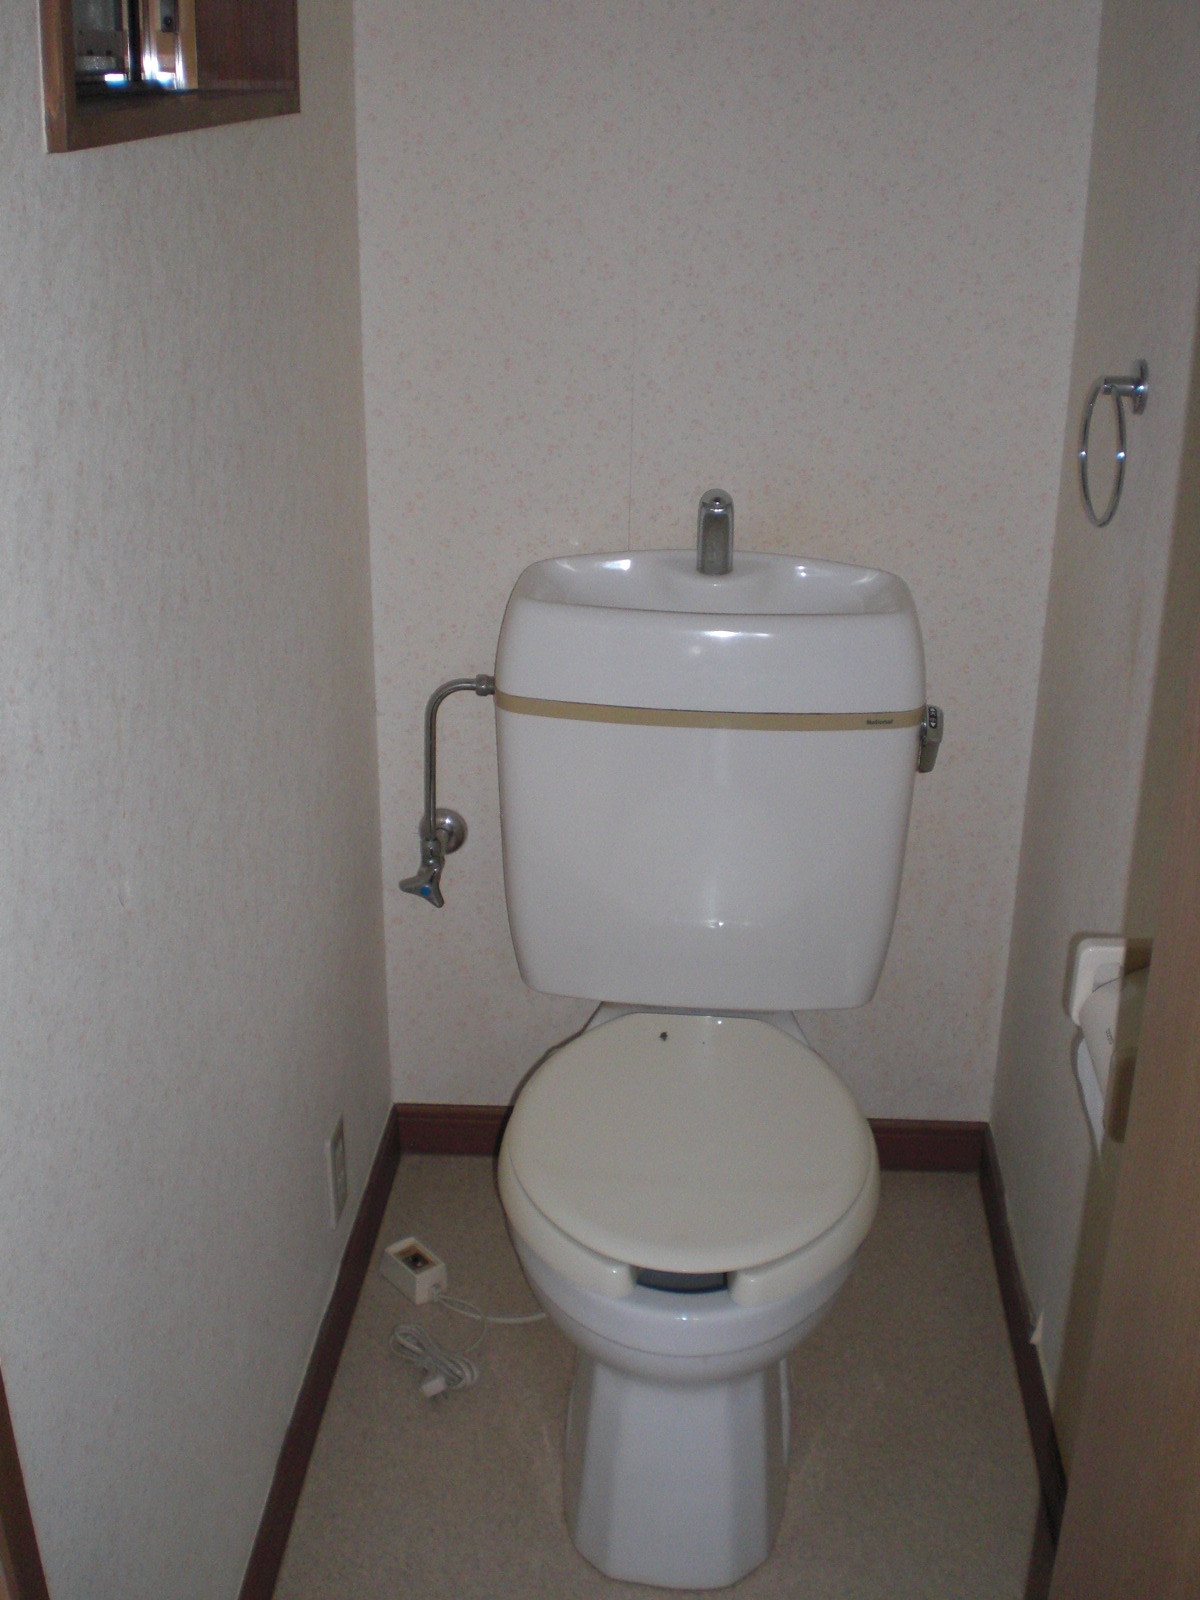 Toilet. Flush toilet with a heating toilet seat